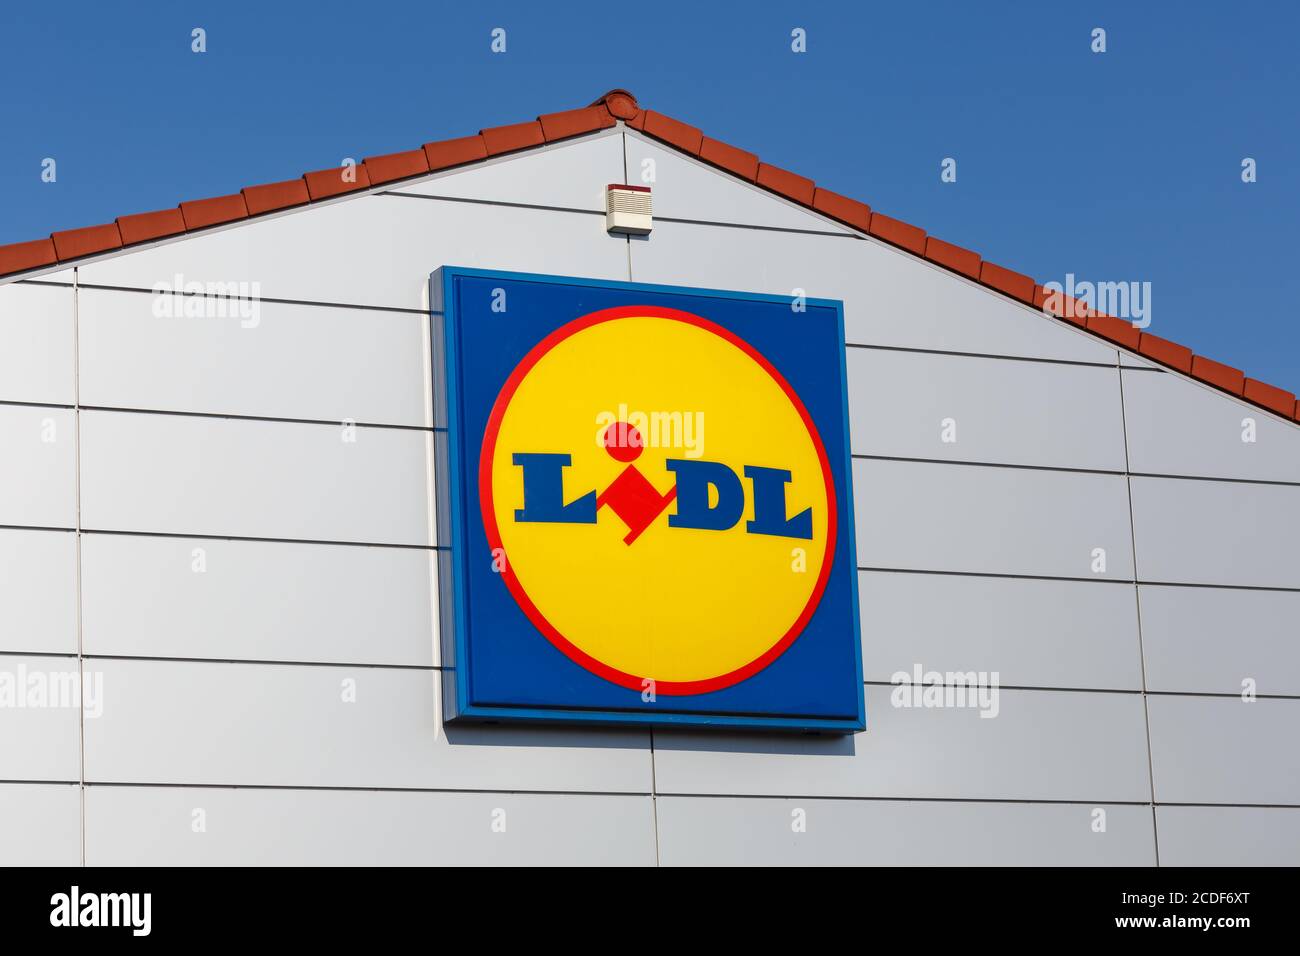 Stuttgart, Deutschland - 17. Mai 2020: Lidl Logo Schild Supermarkt Discounter Discounter in Deutschland. Stockfoto